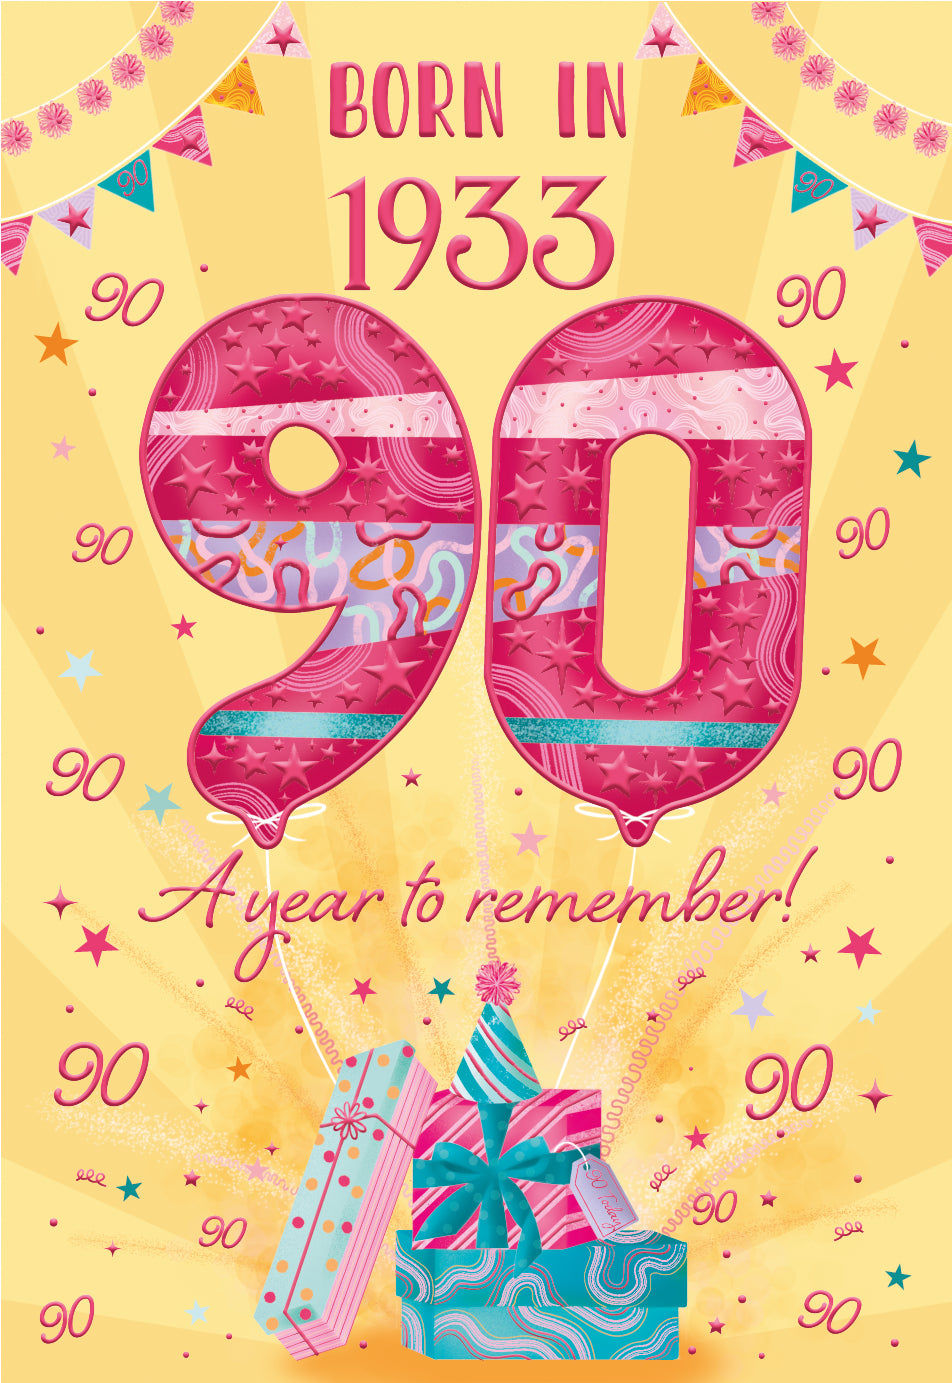 90th birthday card - born in 1933